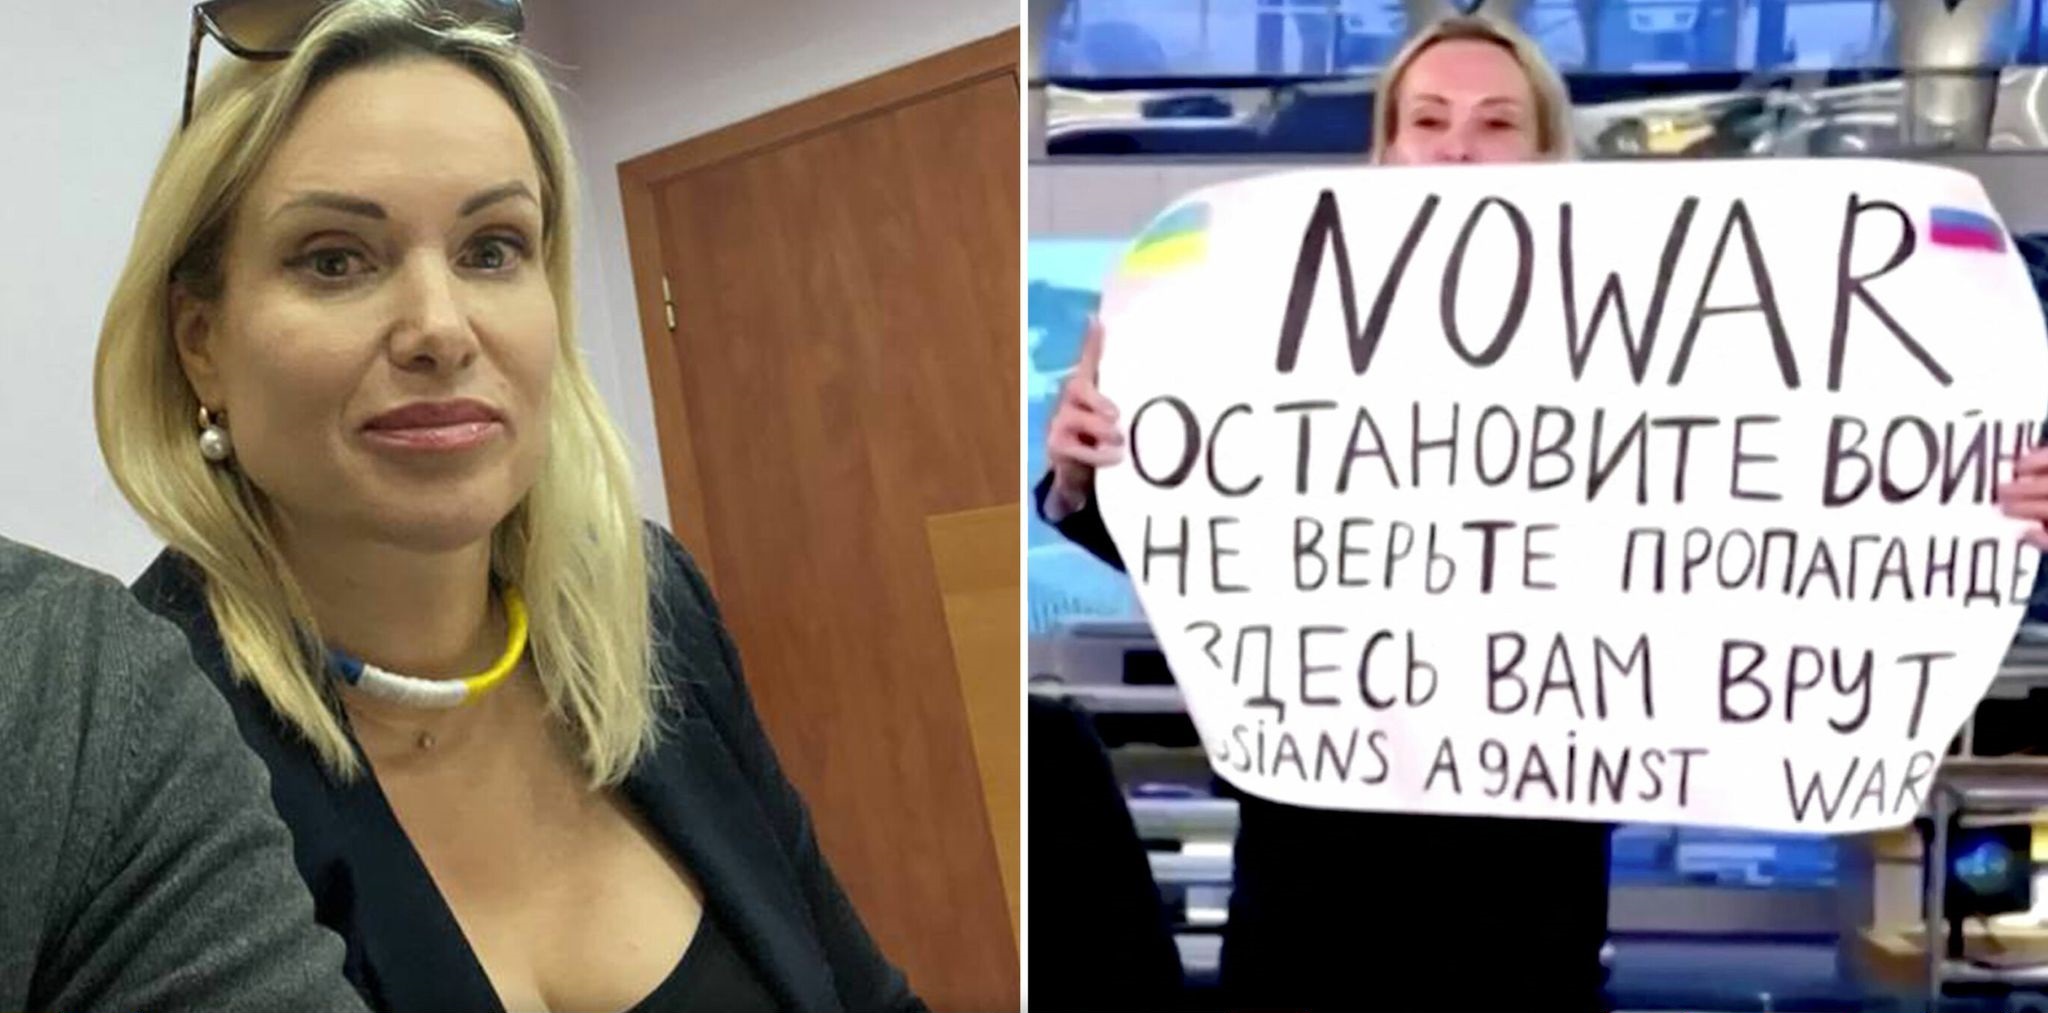 Μαρίνα Οβσιάνικοβα: Ανταποκρίτρια της γερμανικής Die Welt μετά την αντιπολεμική διαμαρτυρία στη ρωσική τηλεόραση